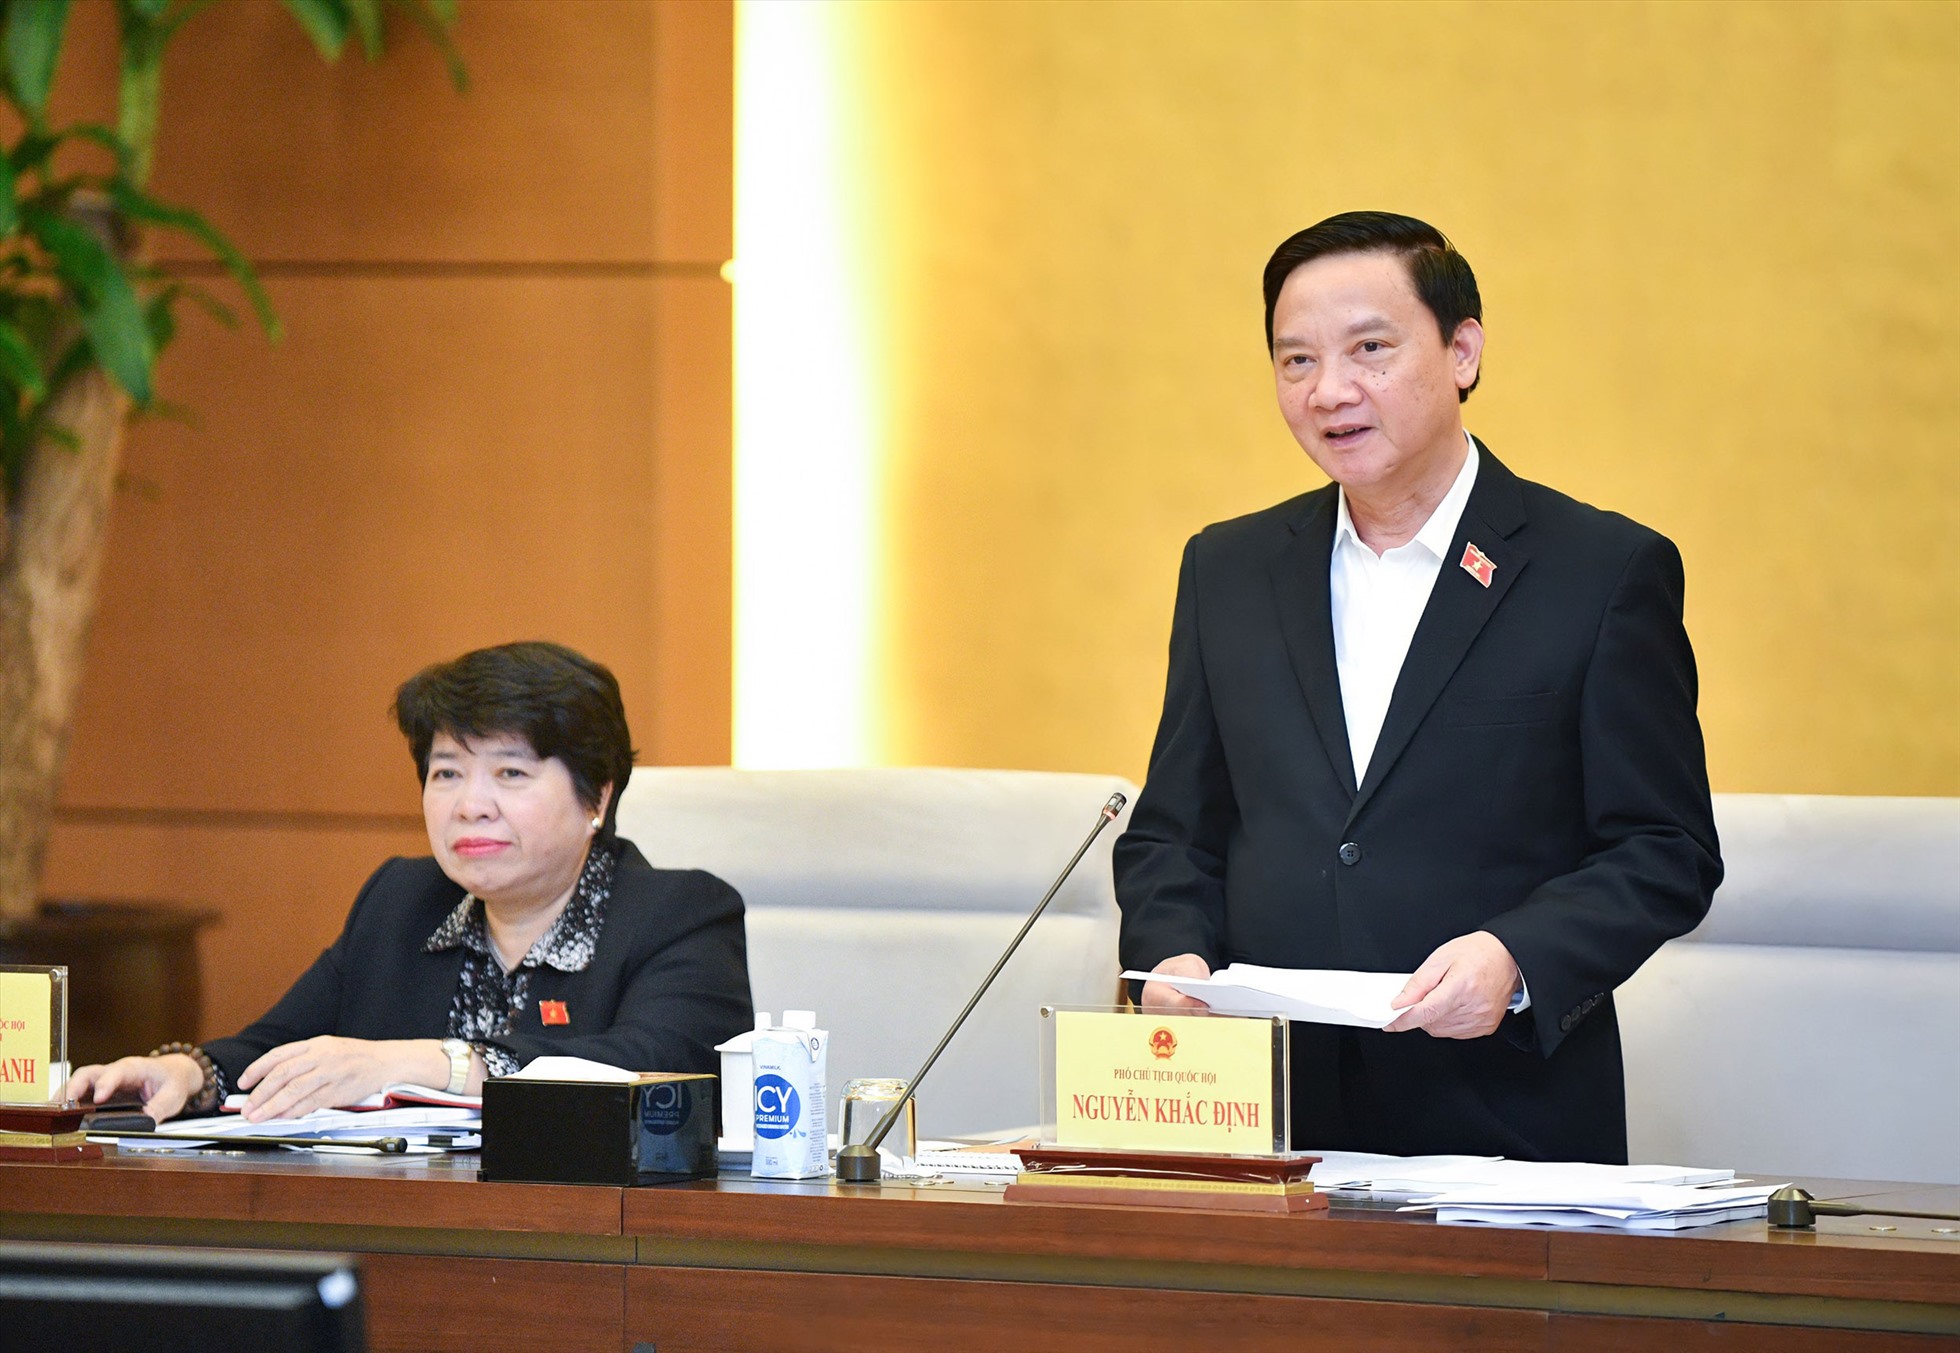 Phó Chủ tịch Quốc hội Nguyễn Khắc Định phát biểu kết luận. Ảnh: QH